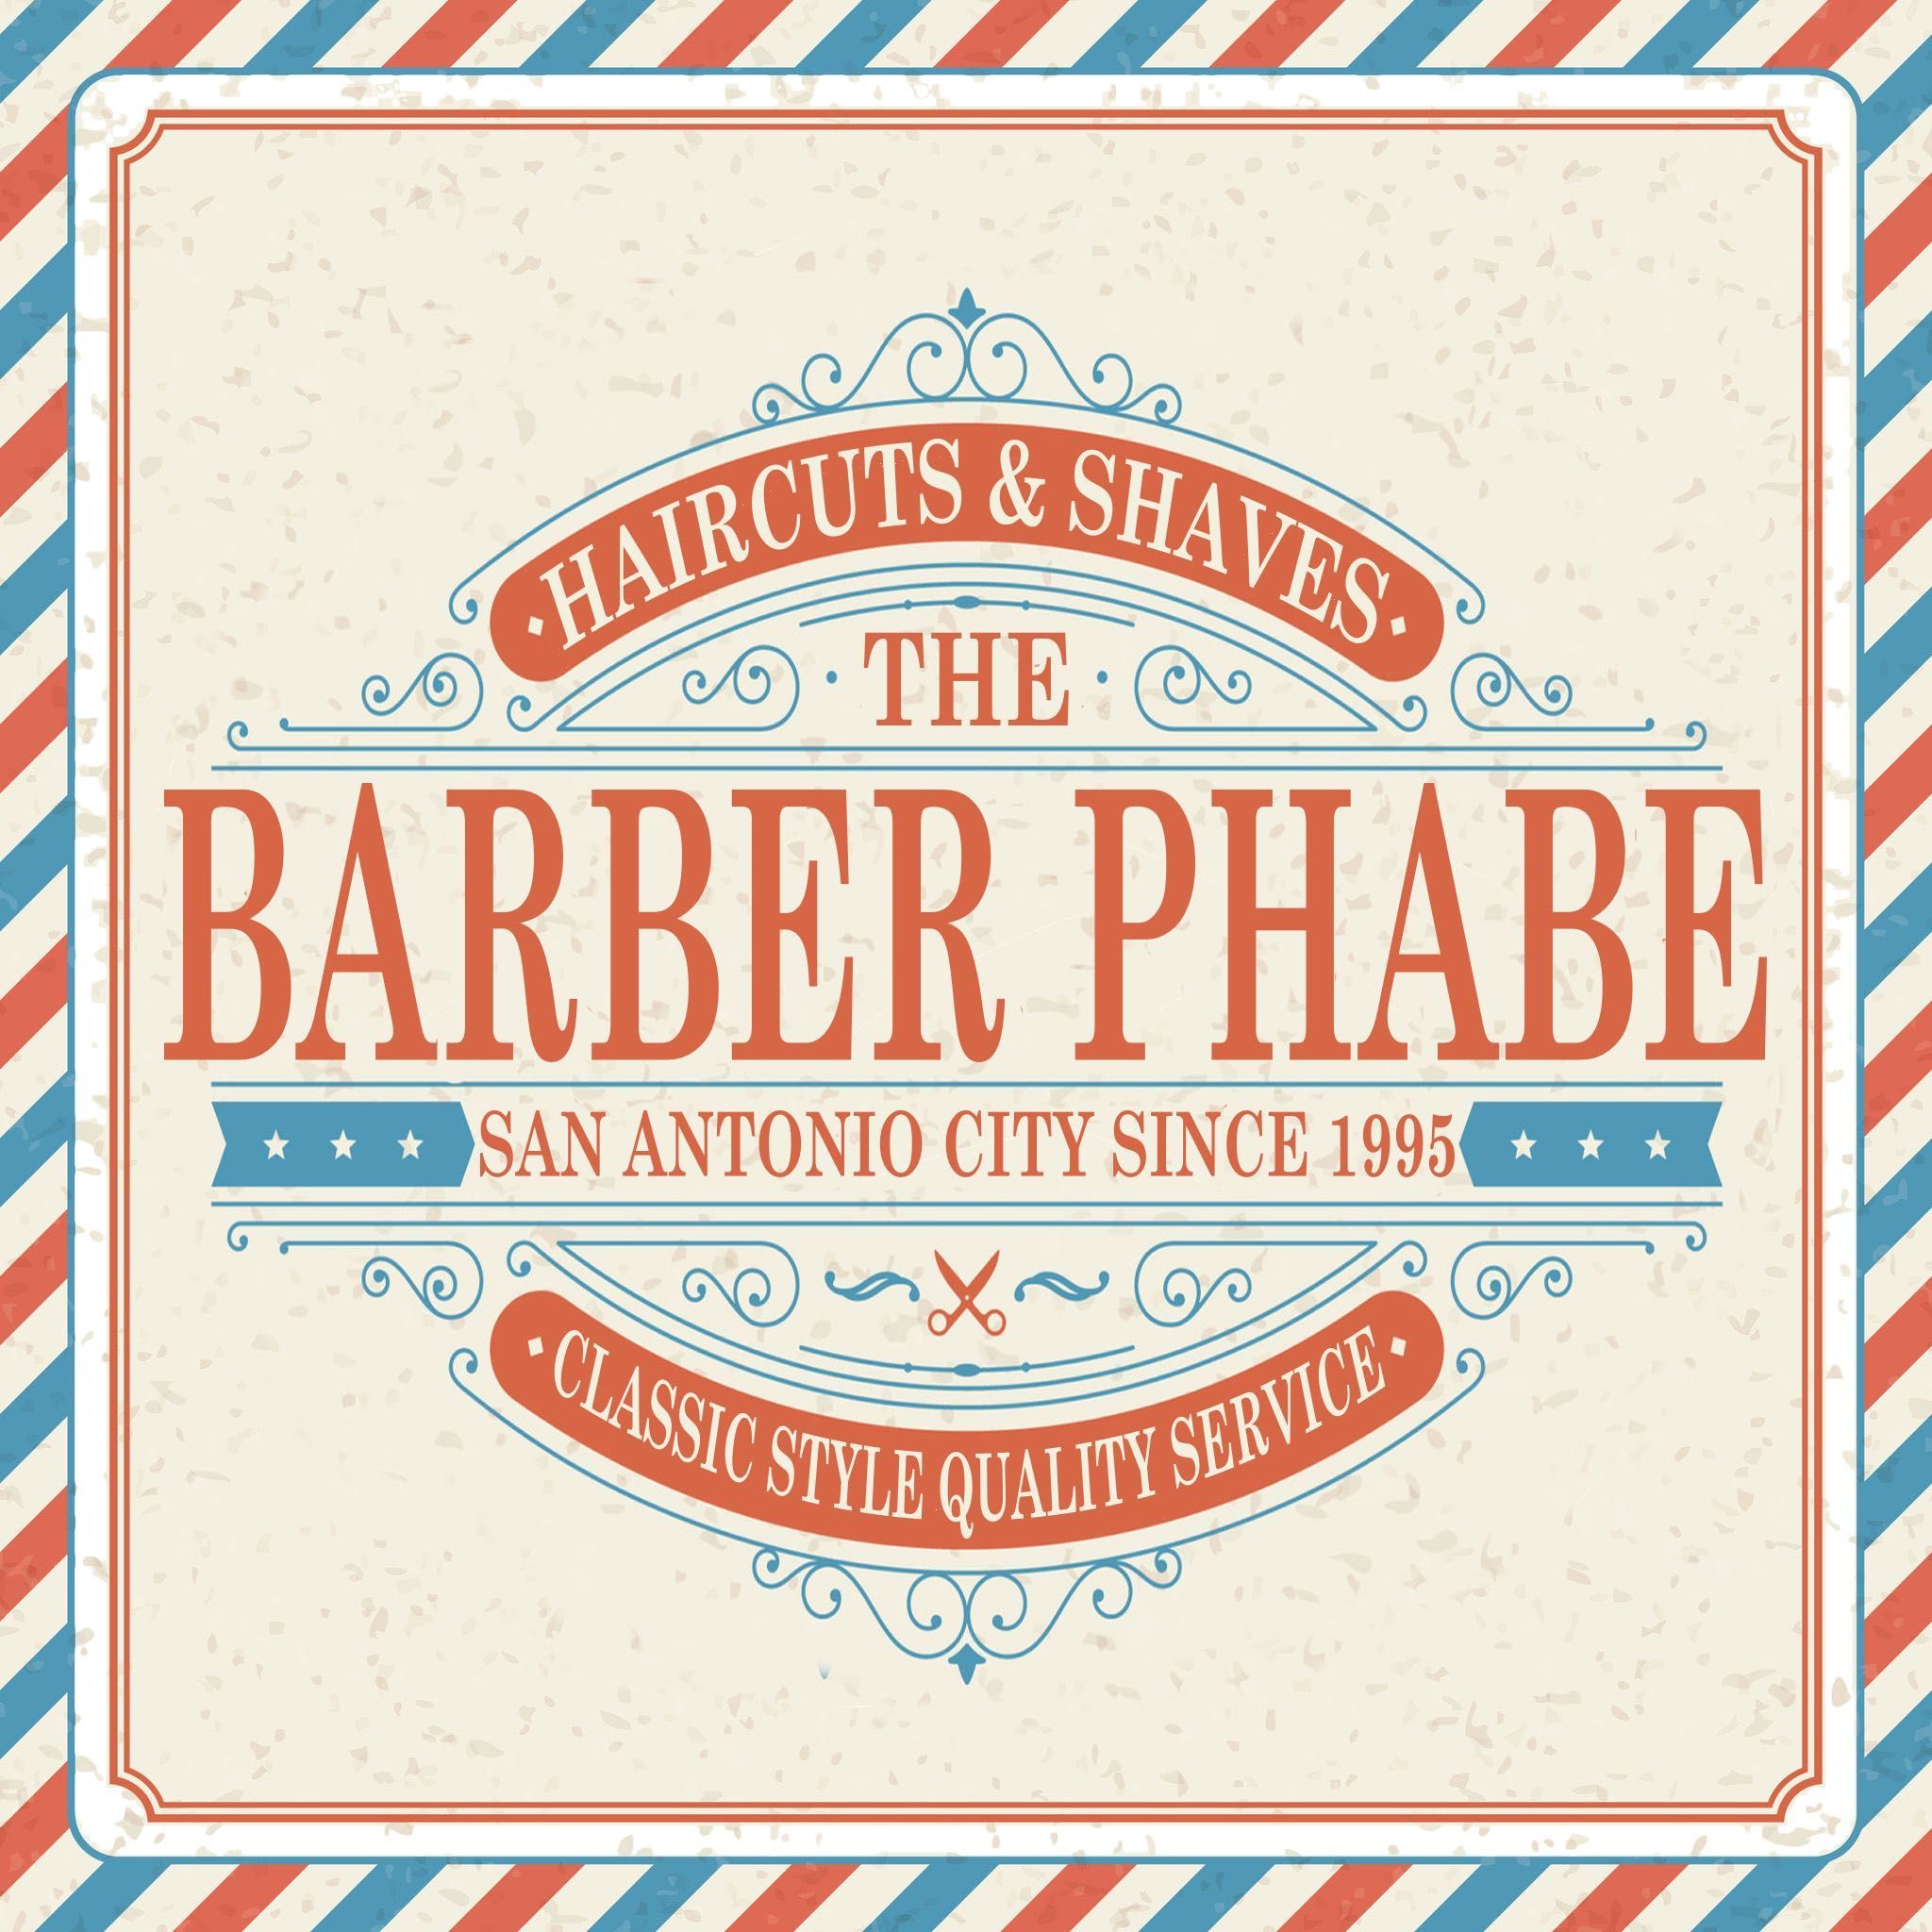 Barber Phabe, Gevalis Barbershop 5619 W Loop 1604 N, suite 116, San Antonio, 78253